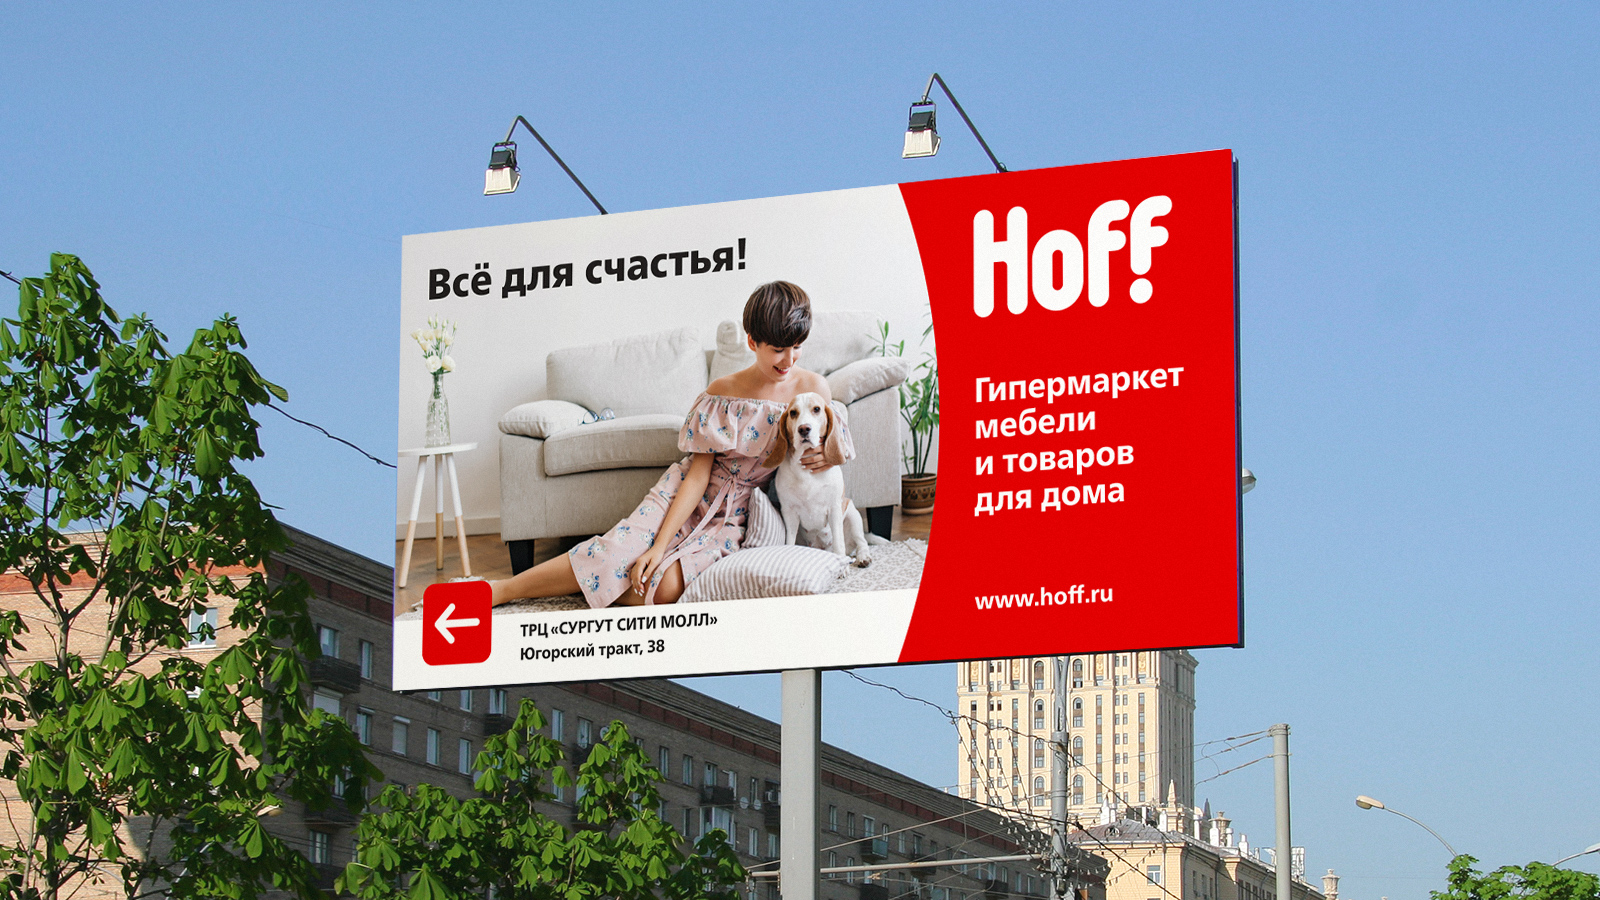 Наружная реклама Hoff